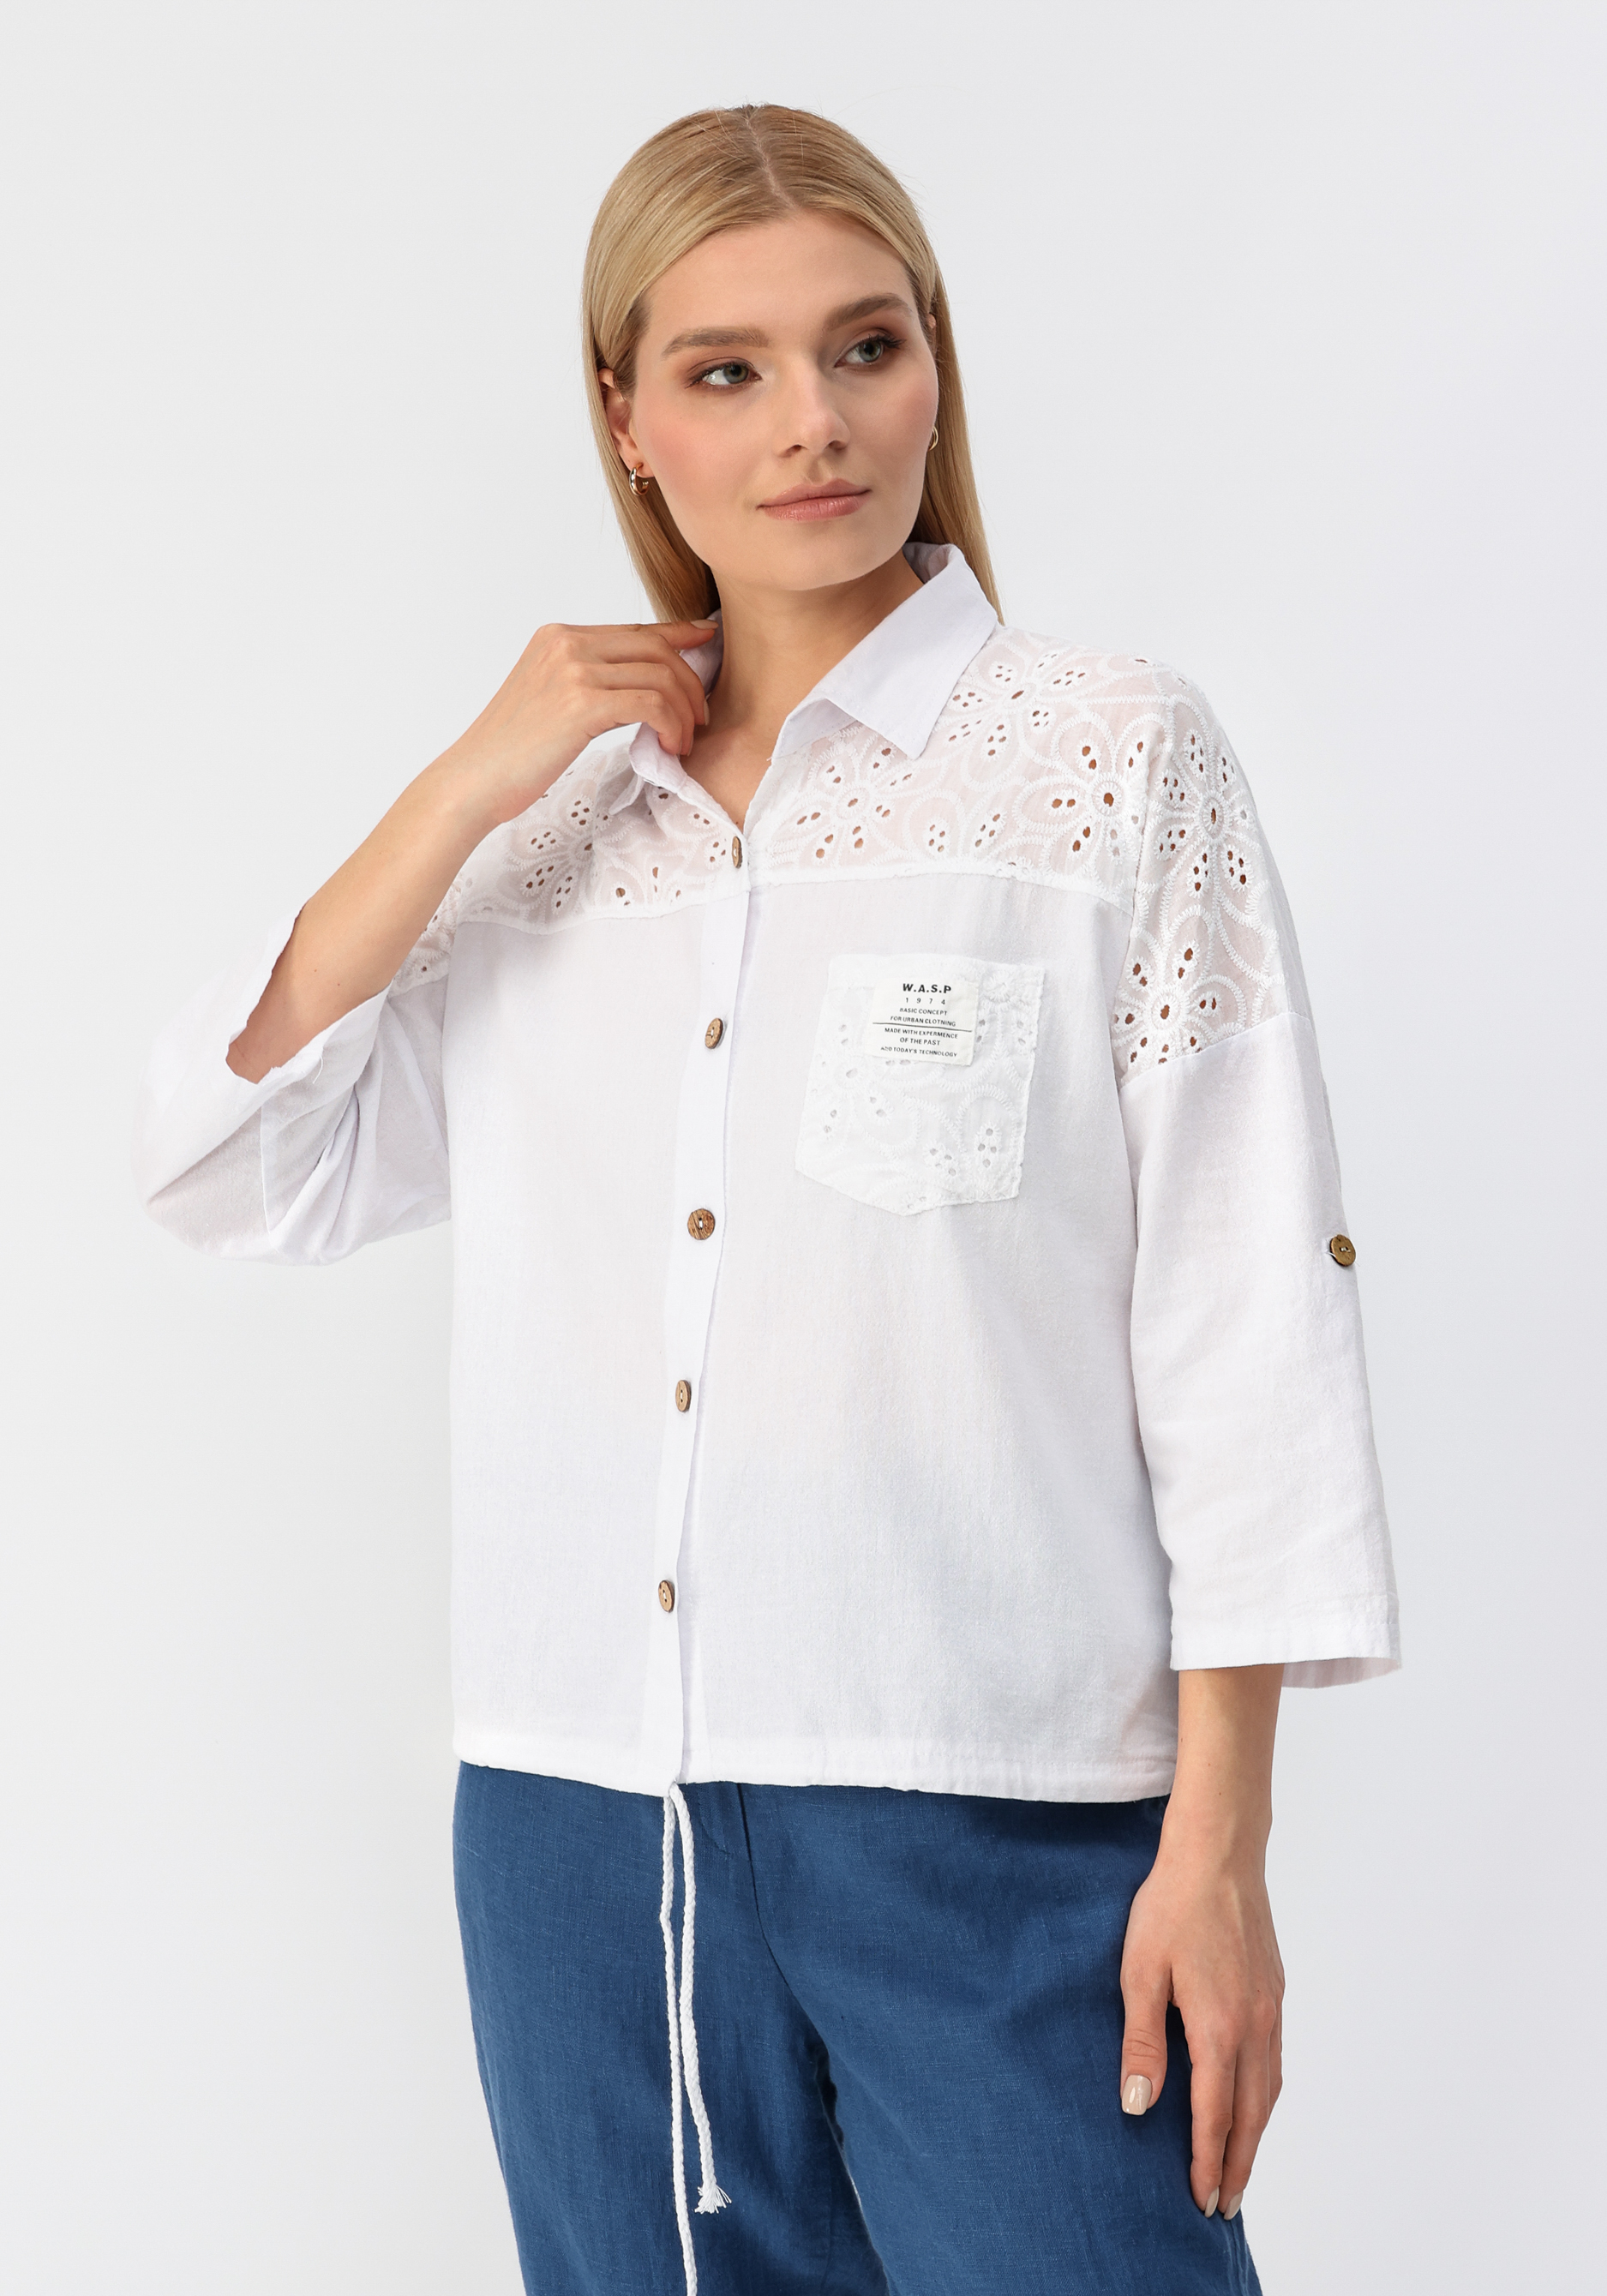 Рубашка с отложным воротником Alina Collection, размер 56, цвет синий